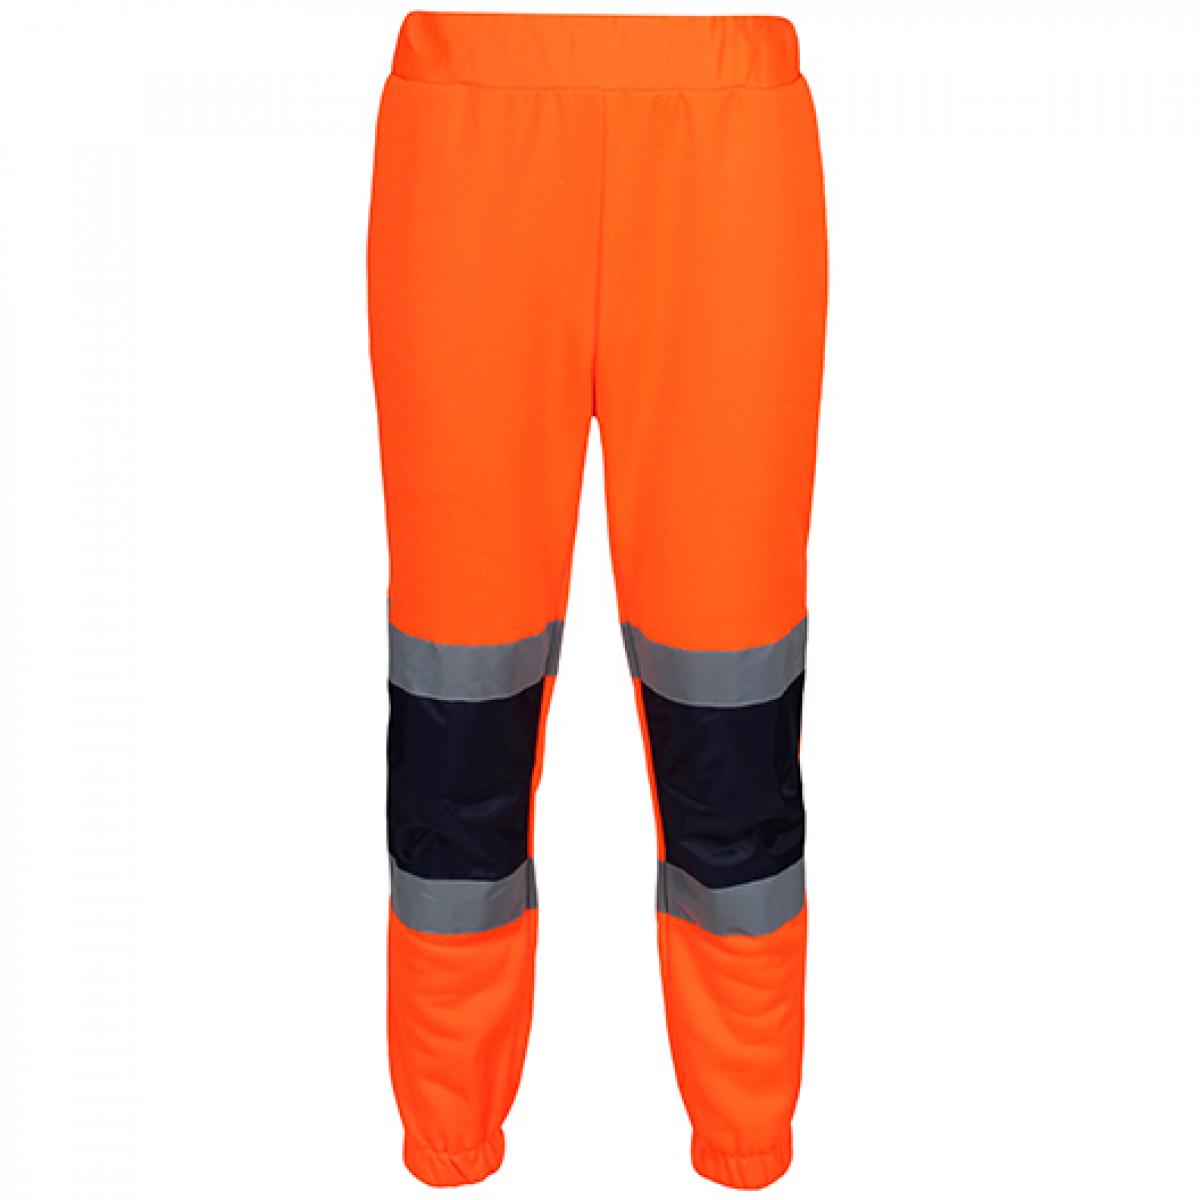 Hersteller: Regatta High Visibility Herstellernummer: TRJ503 Artikelbezeichnung: Pro Hi Vis Joggers - Sicherheits Jogginghose Farbe: Orange/Navy